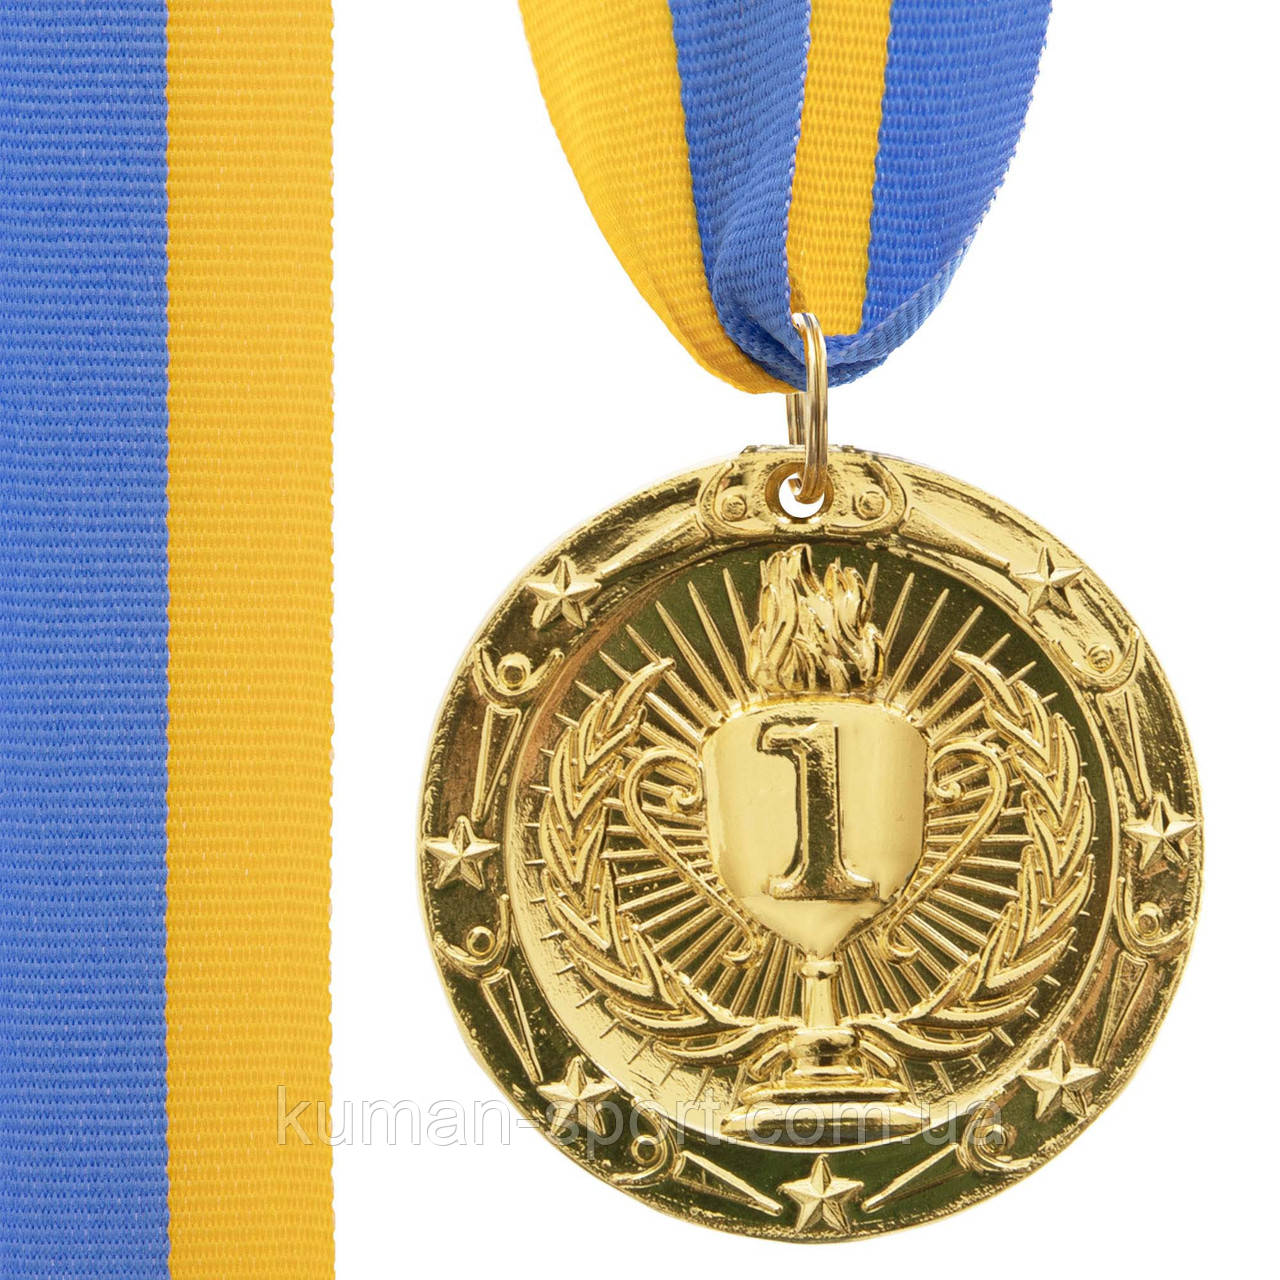 Медаль спортивна "Кубок" (d 4,5, метал) золото, срібло, бронза.